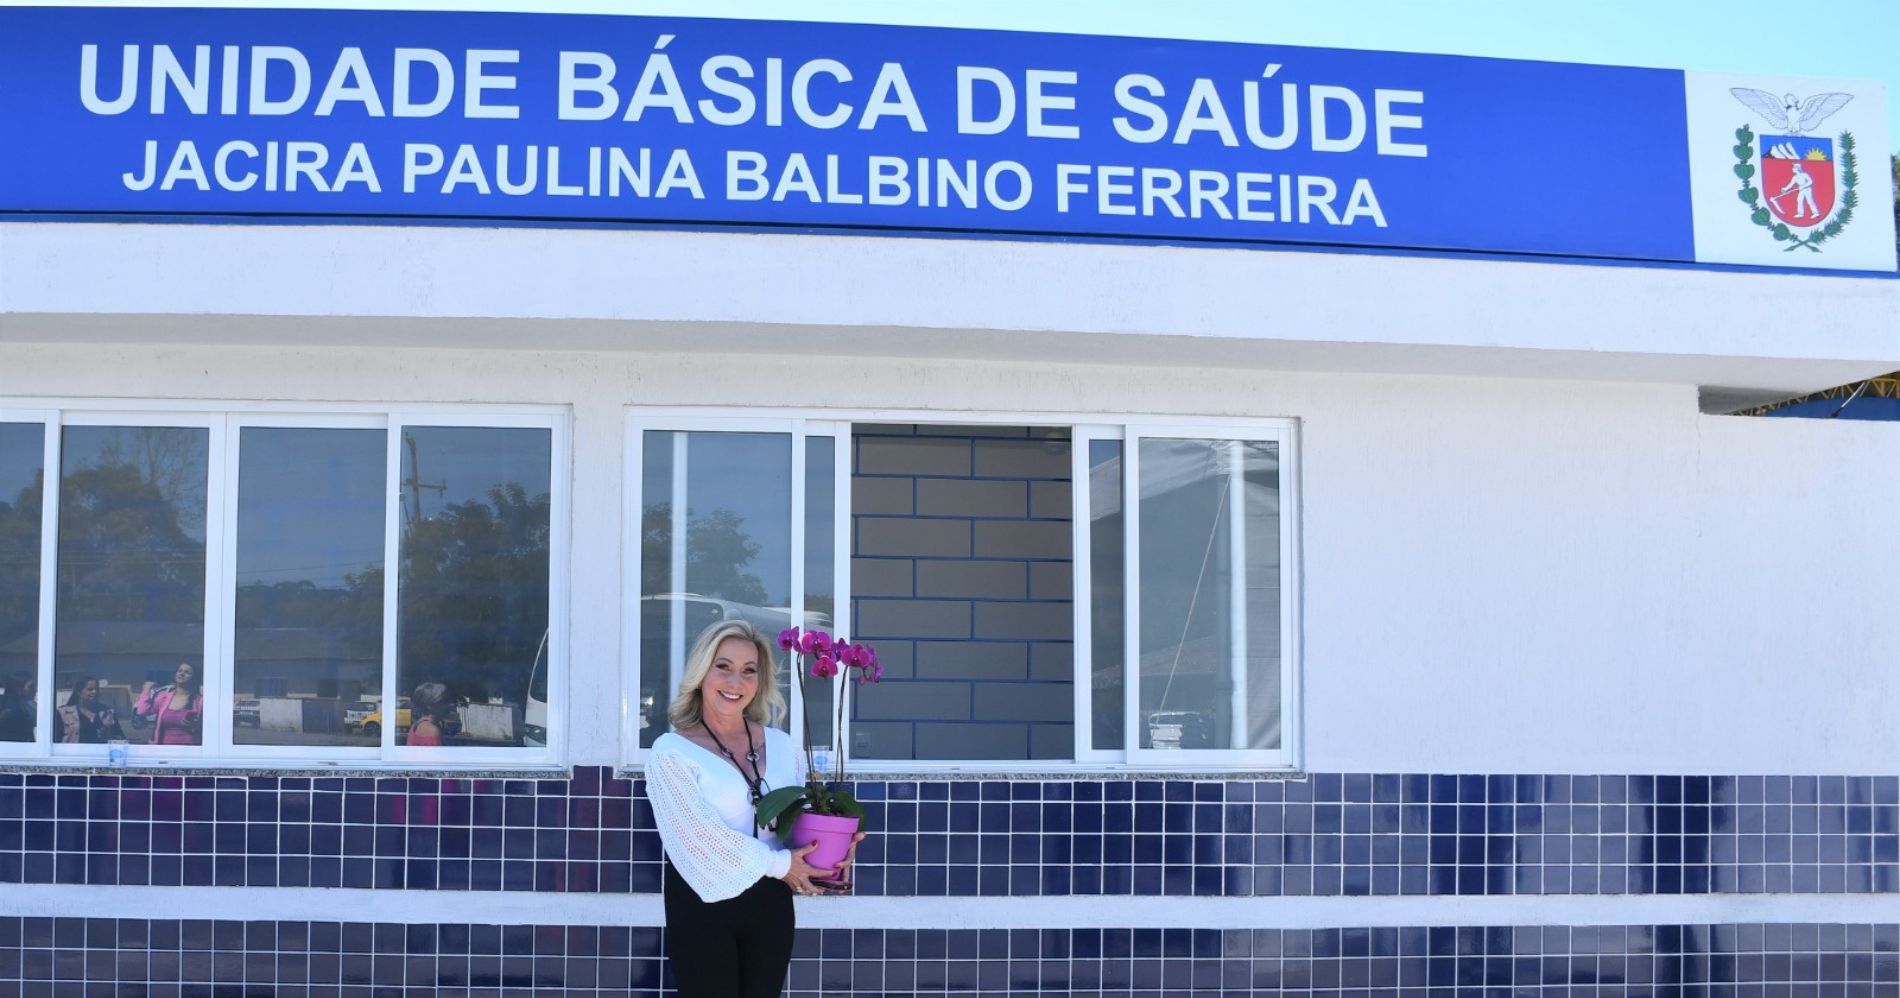 Campina reinaugura, após reforma e ampliação, a nova UBS Jacira Balbino Ferreira